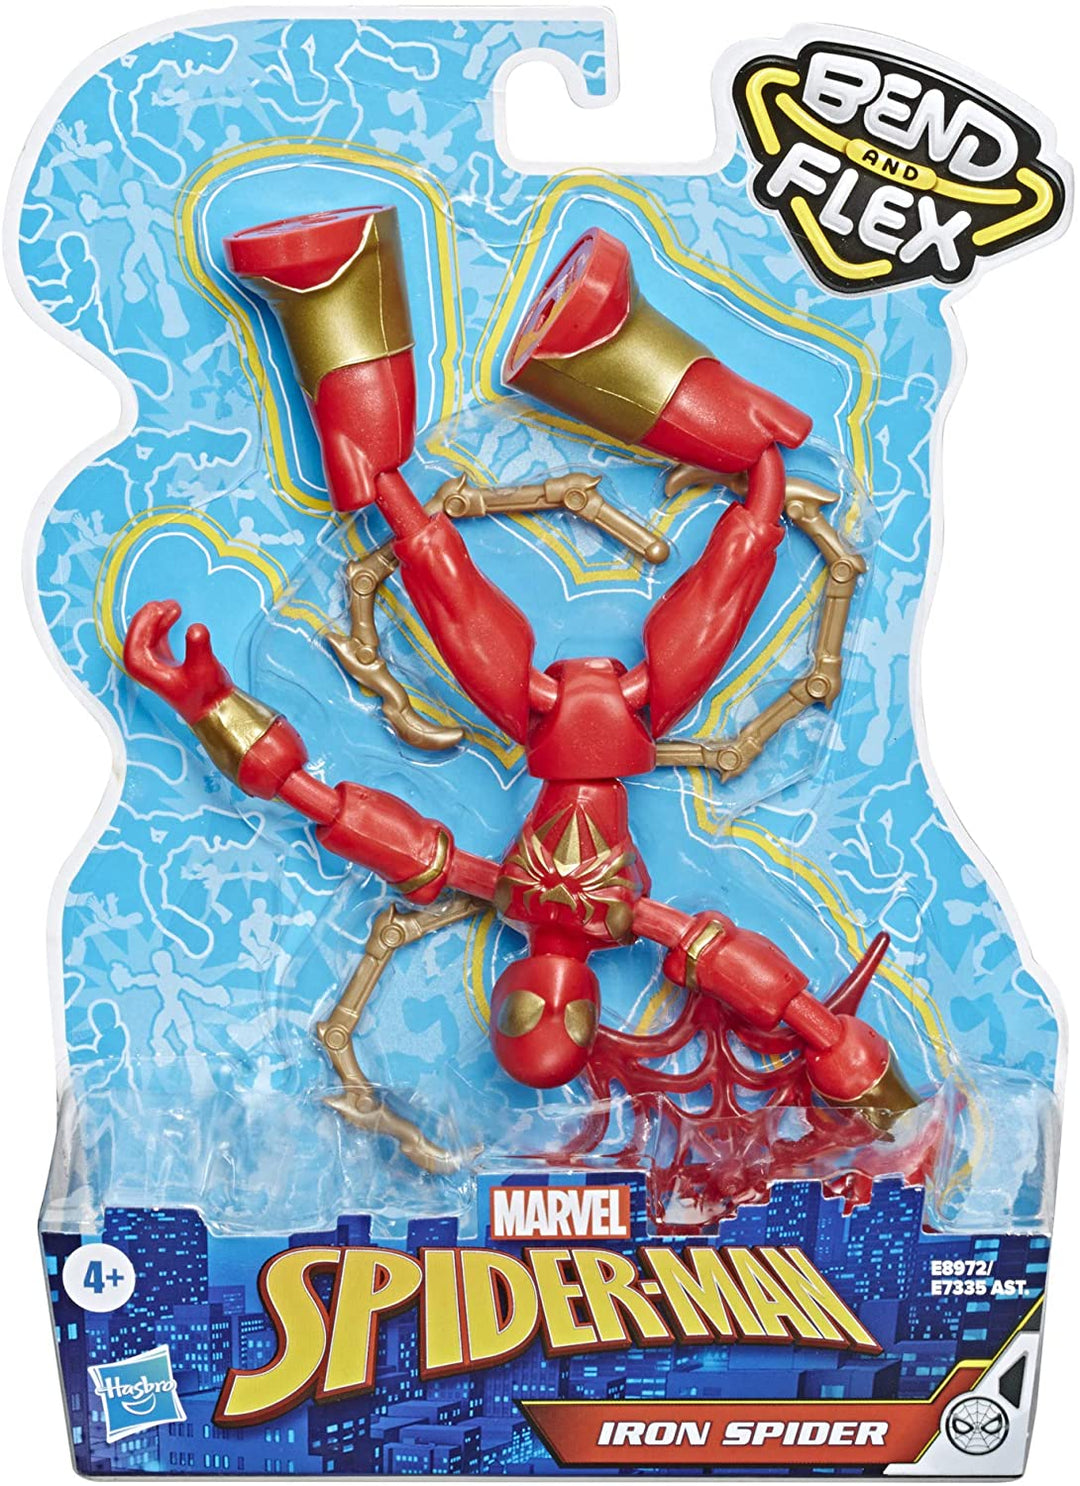 Marvel Spider-Man Bend et Flex Iron Spider Action Figure Toy, figurine flexible de 6 pouces